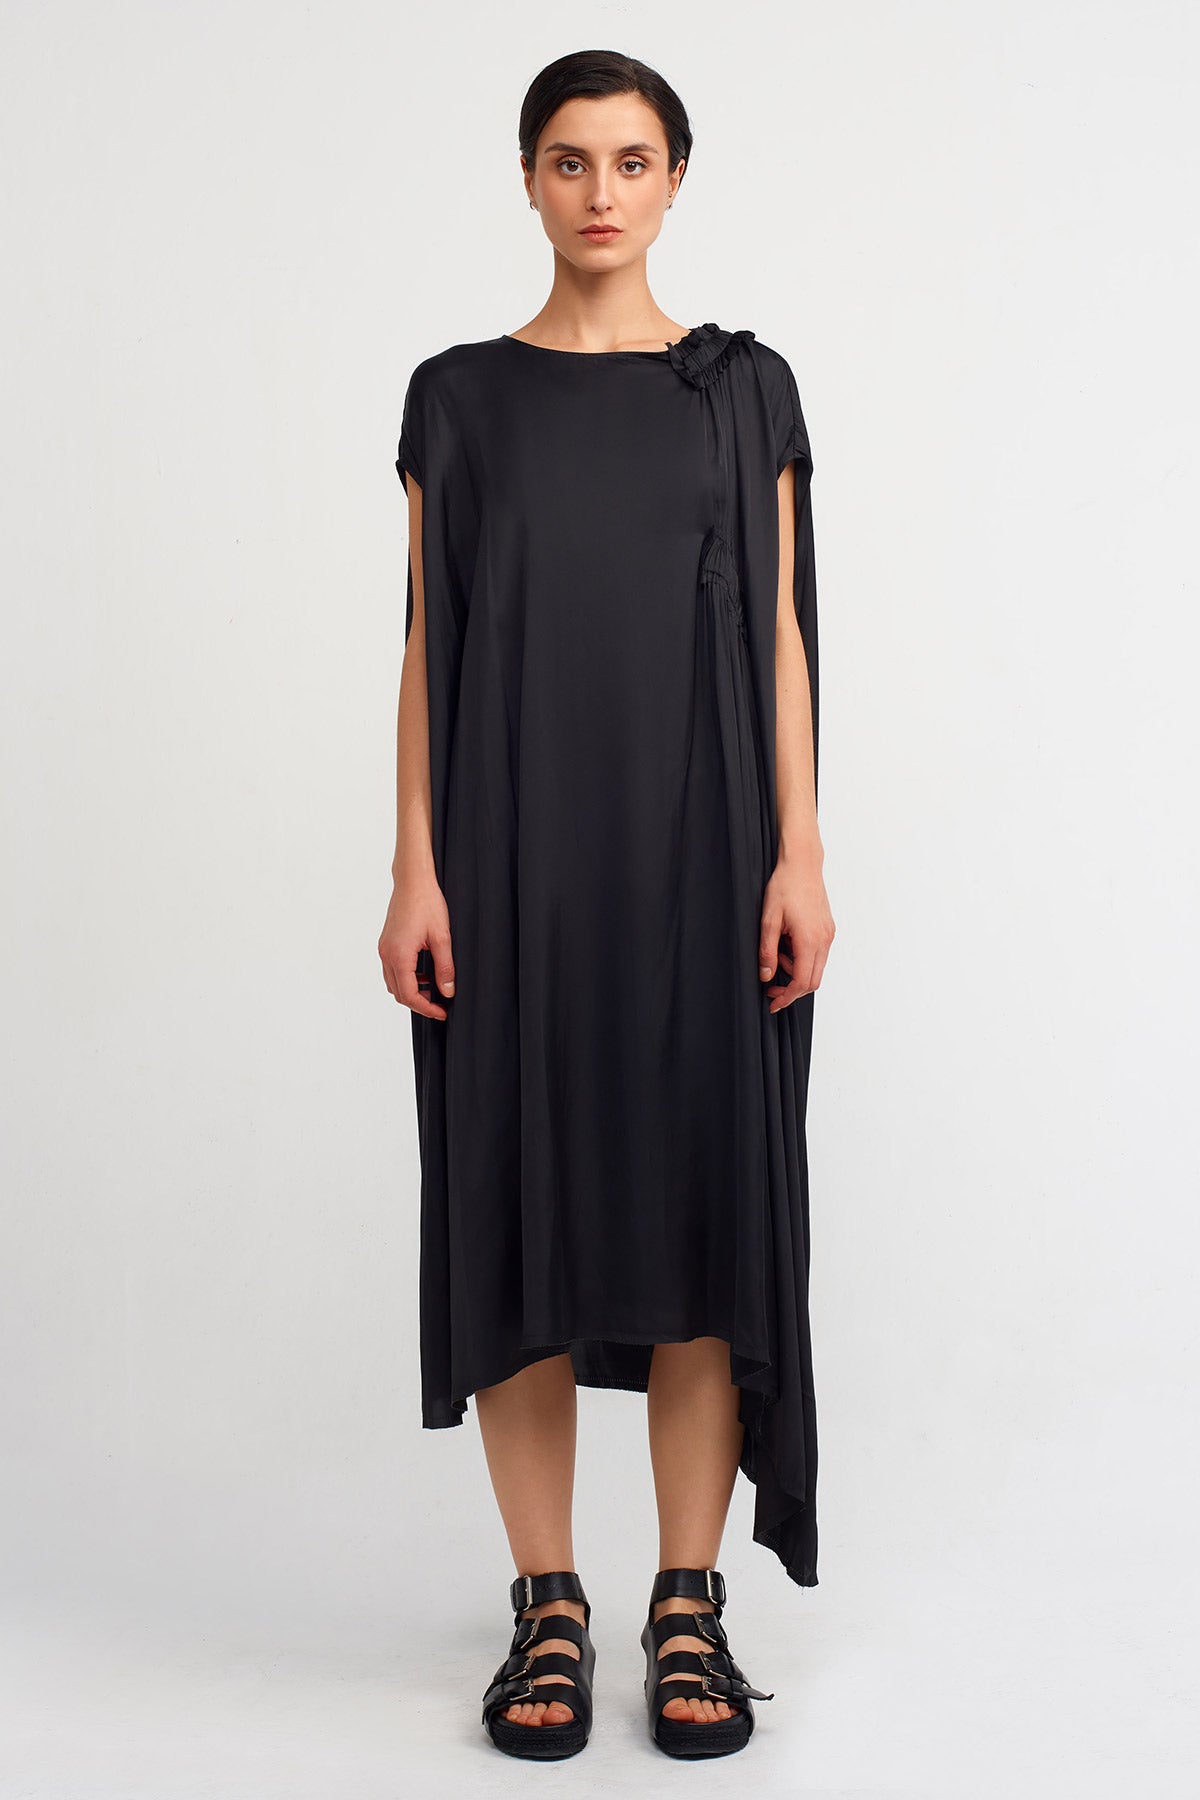 Siyah Geniş Yaka Saten Elbise-K234014113